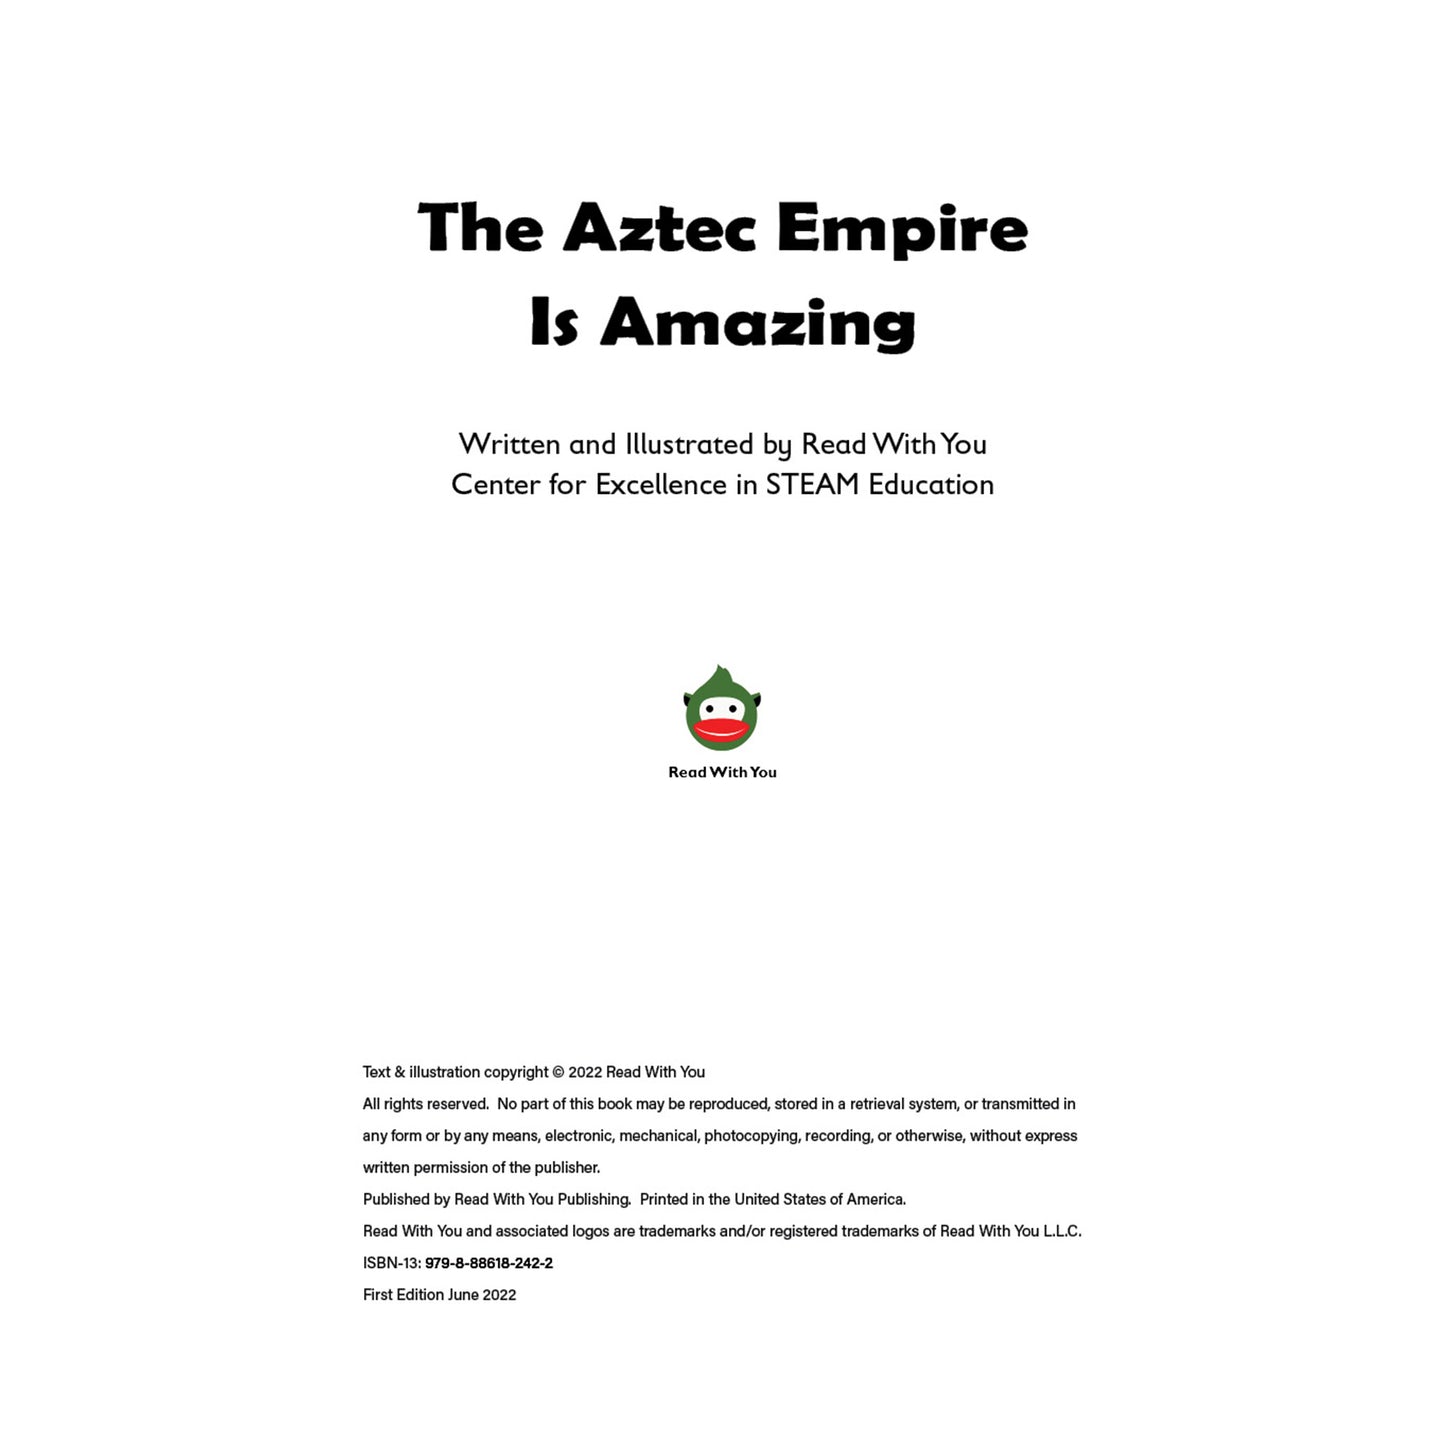 The Aztec Empire is Amazing